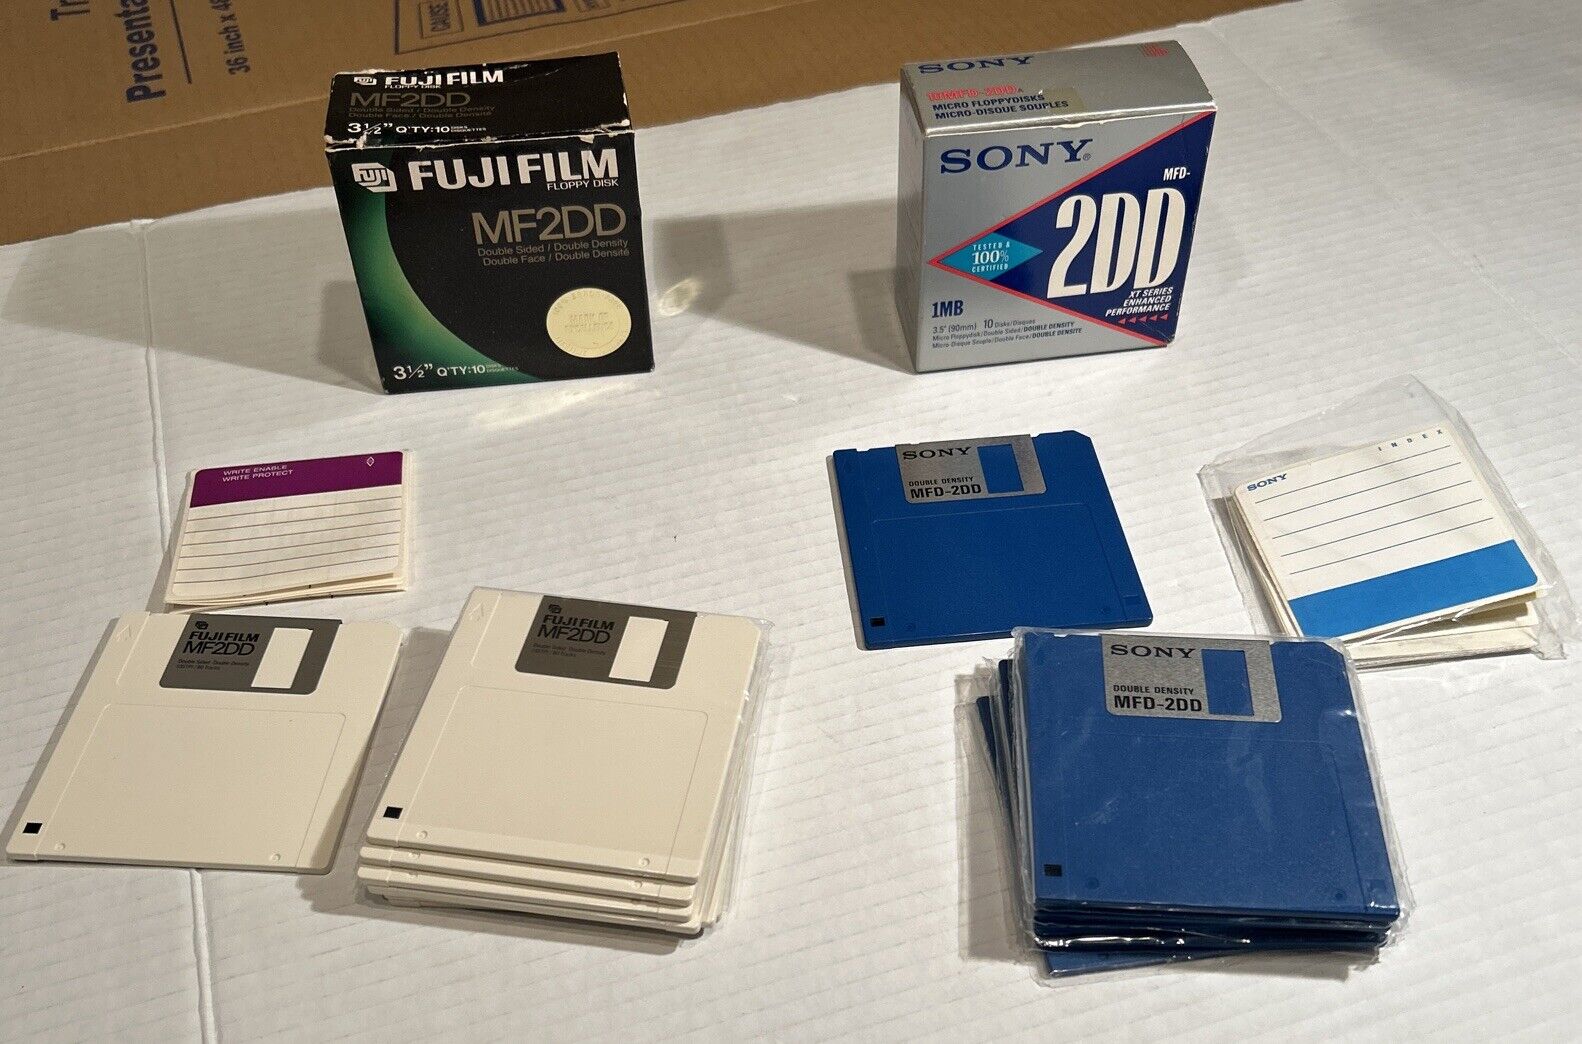 6 New Sony MFD-2DD Fuji Film MF2DD Floppy disk Double Sided 3.5” Micro